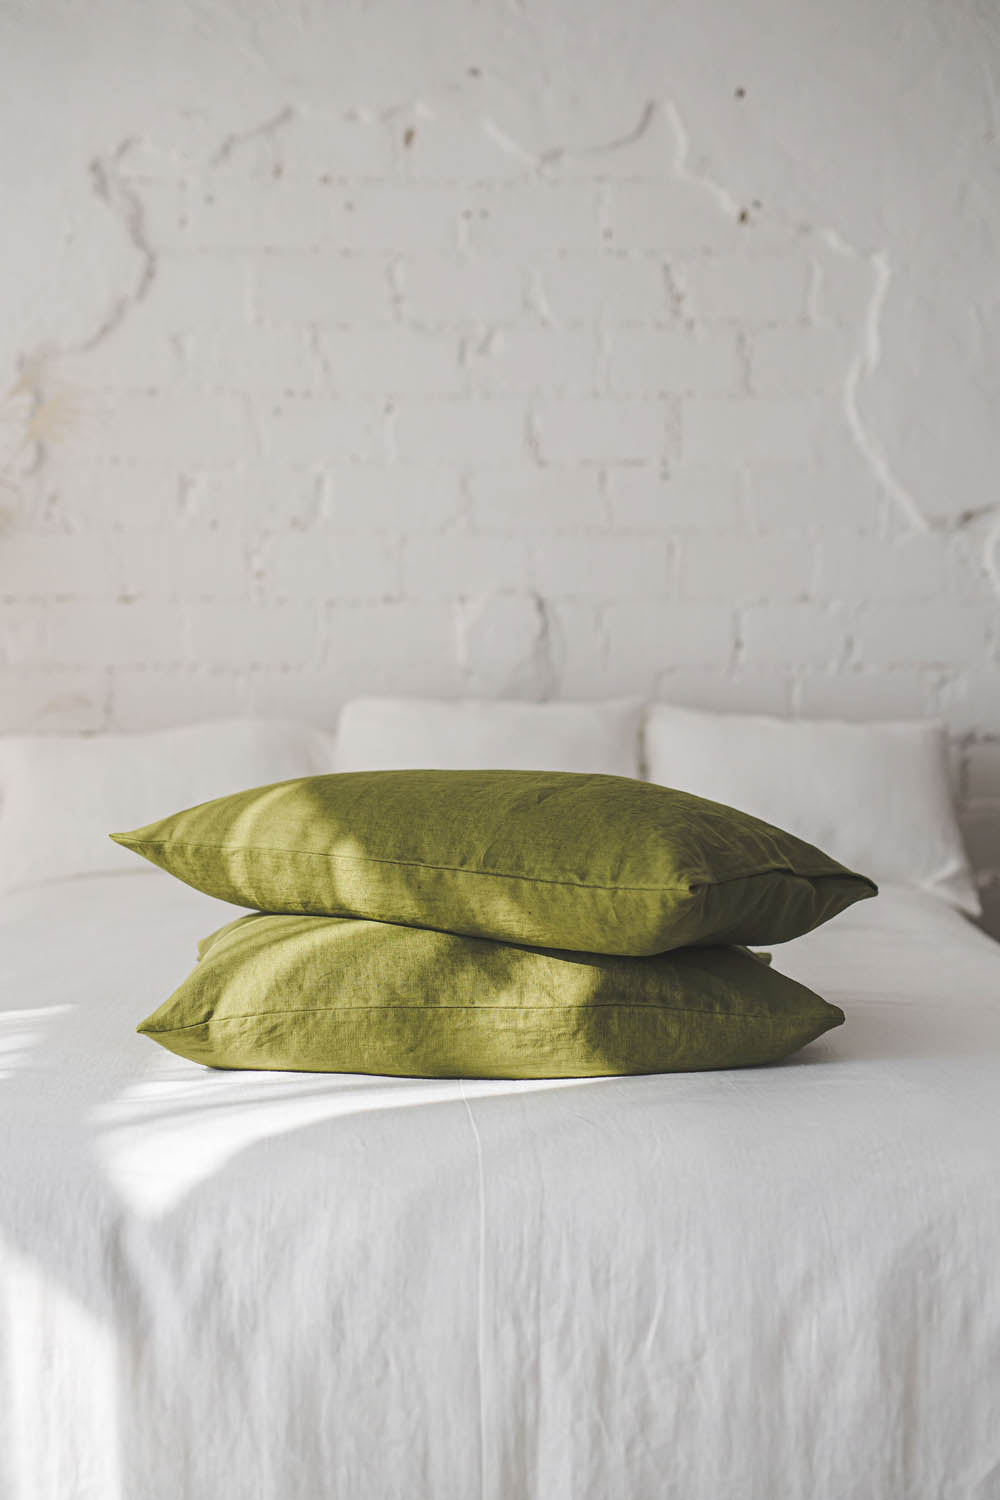 Moss green linen pillowcase